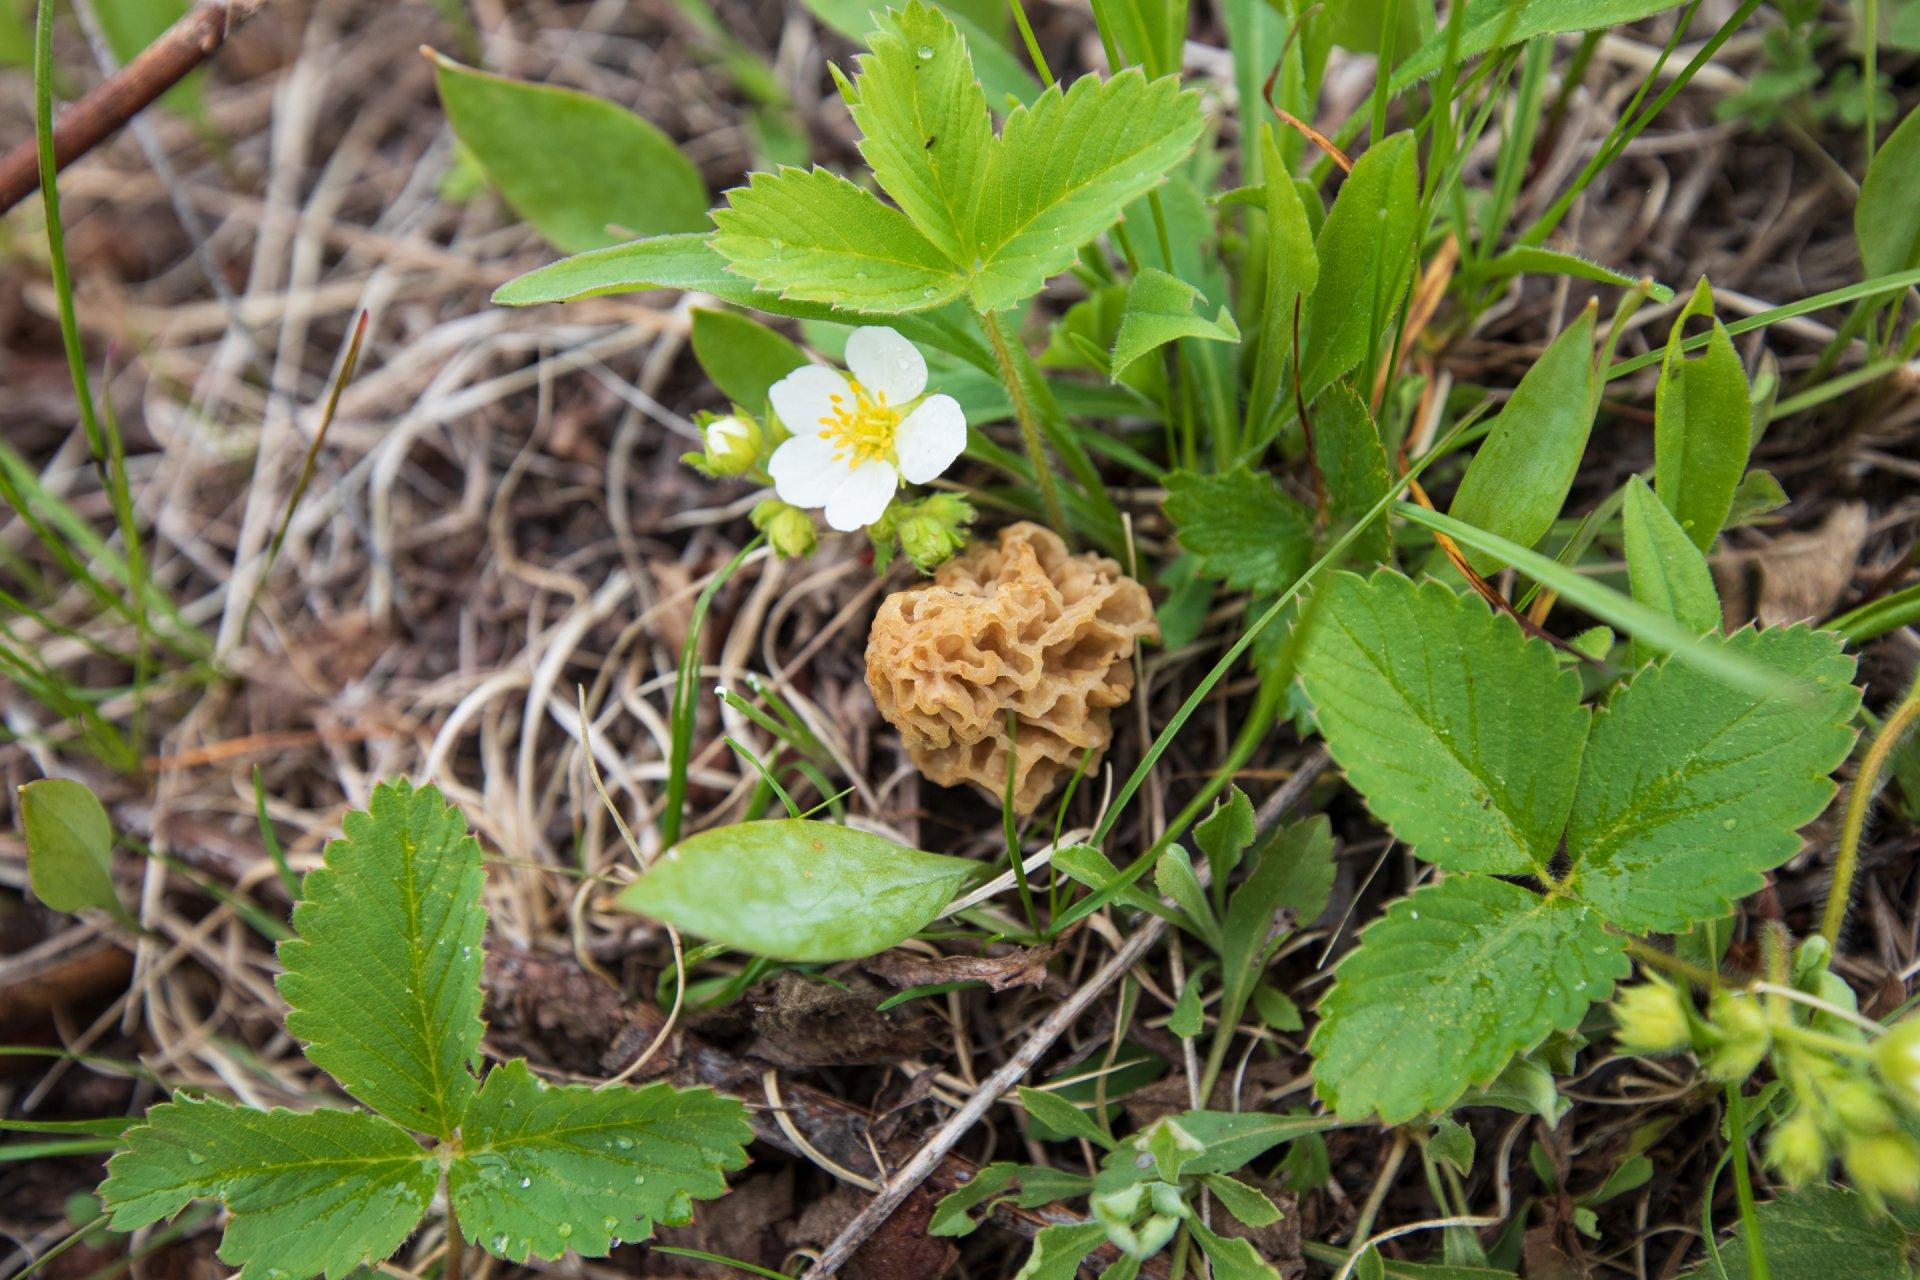 morel mushrom in the brush on ground beside small flower